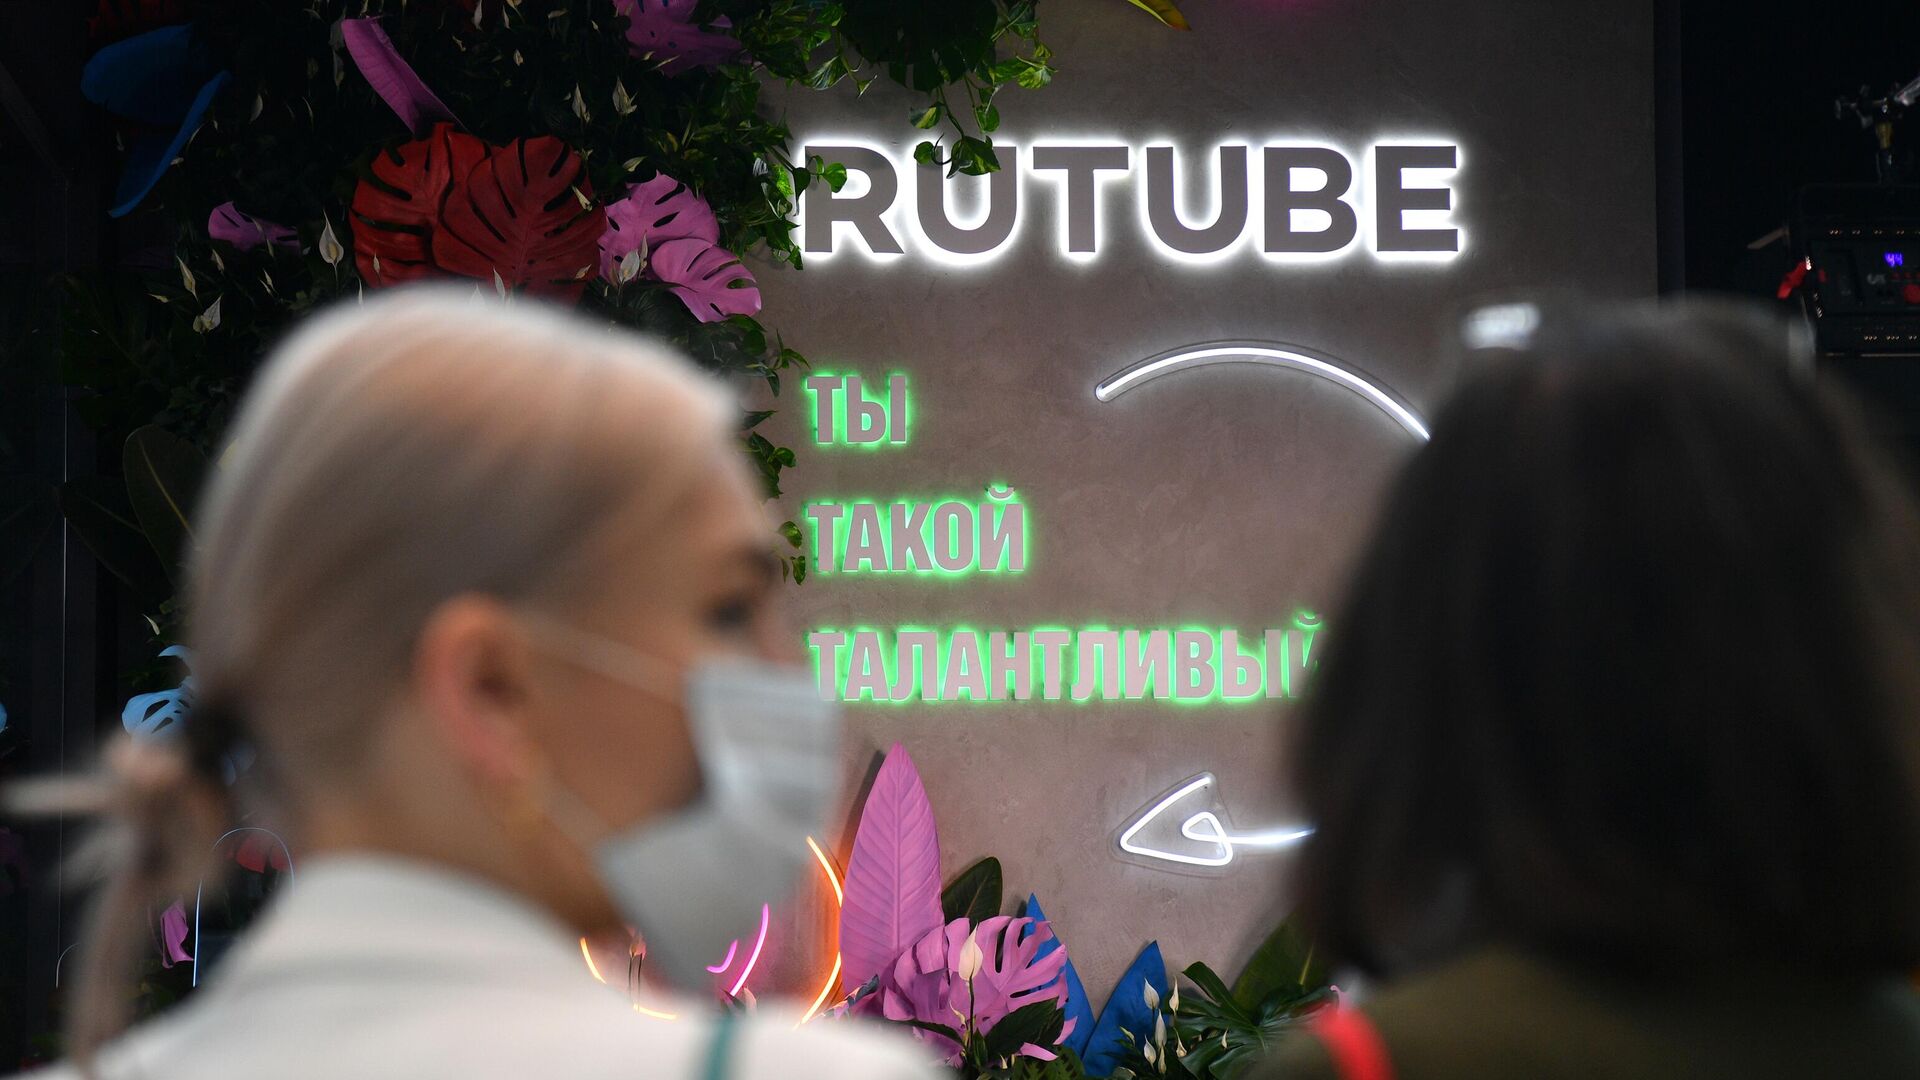 Rutube заявляет о намерении инвестировать 30 миллиардов рублей в инфраструктуру